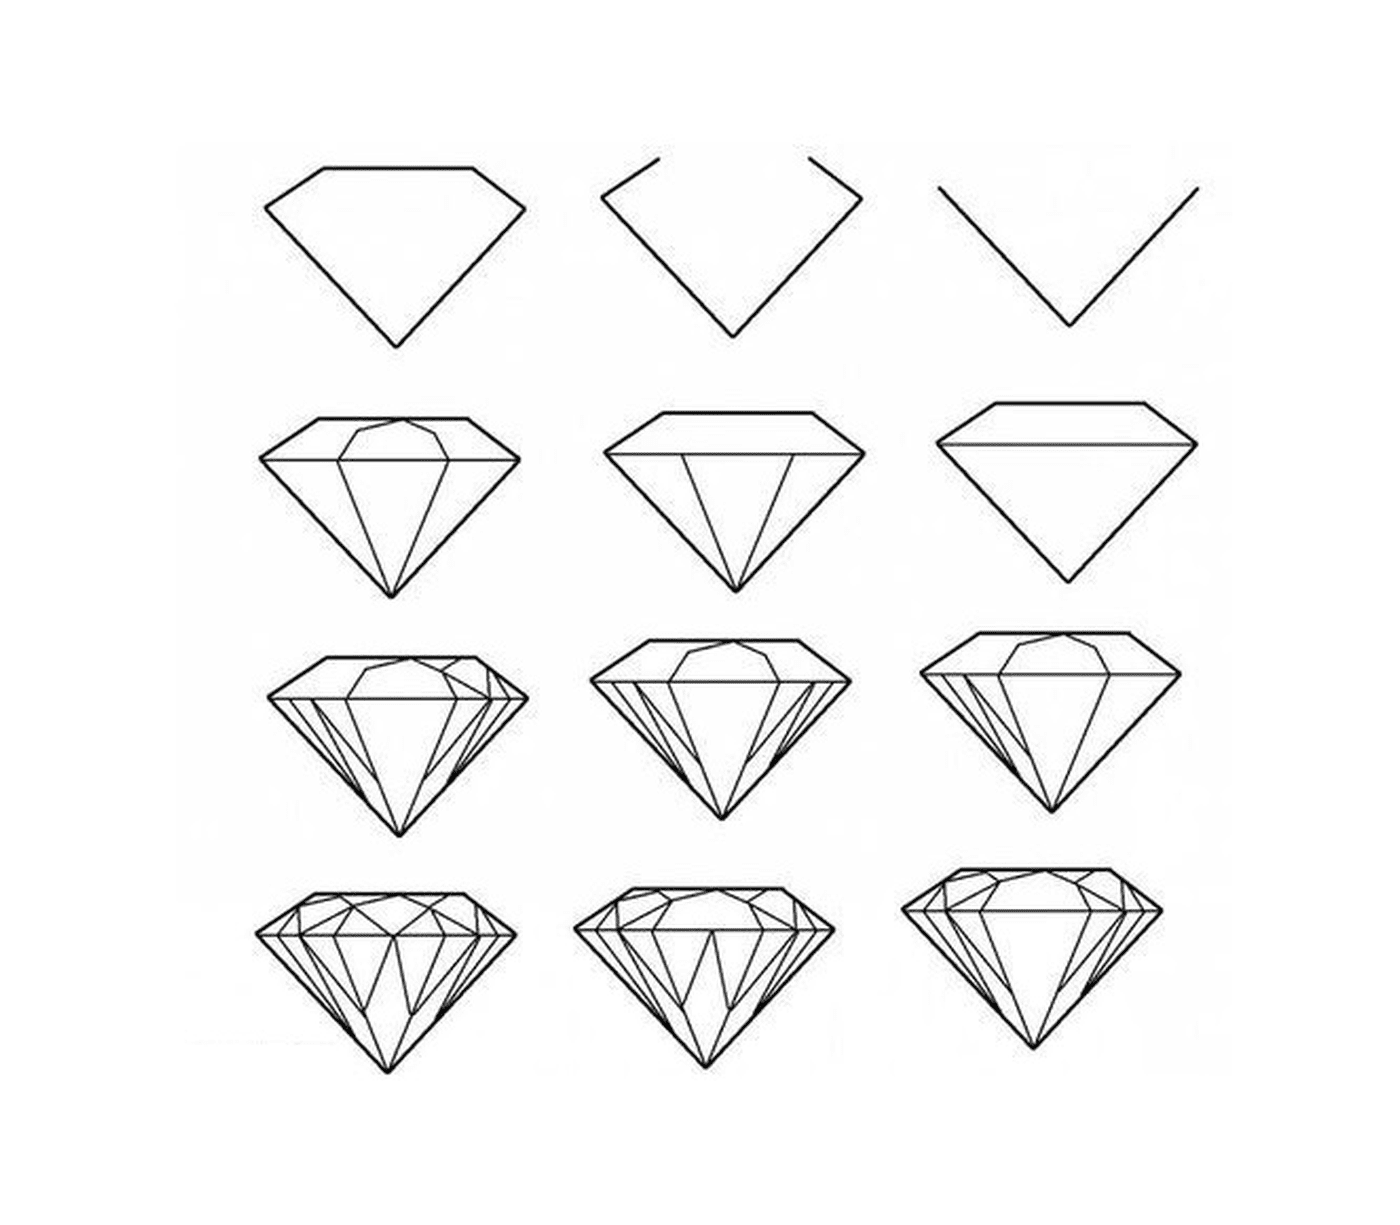   Une série de dessins de diamants 